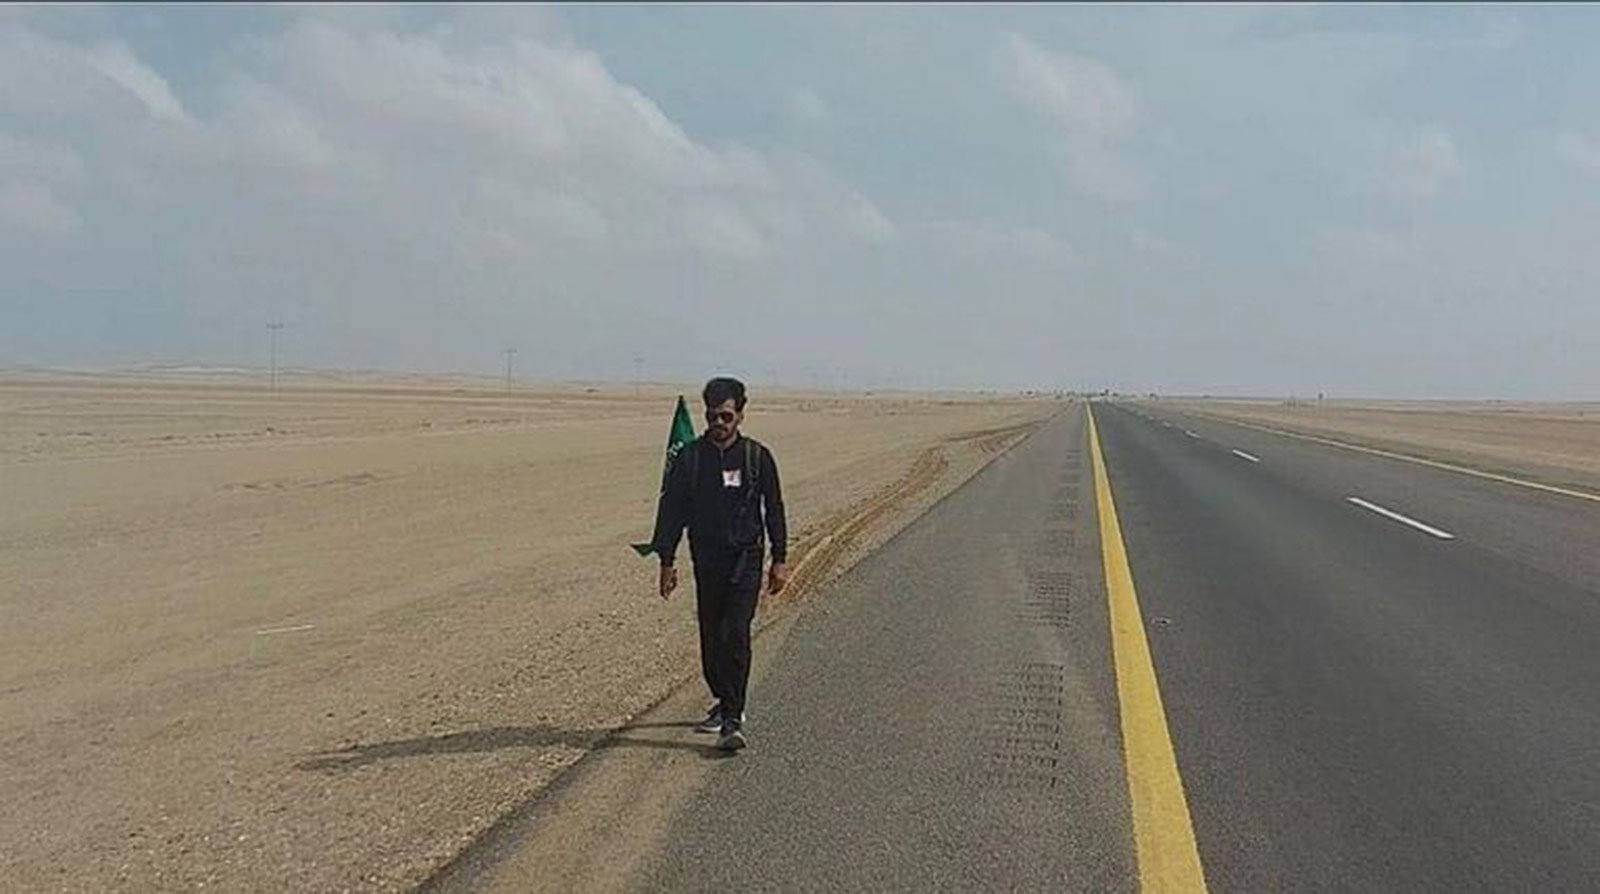  مغامر سعودي يبدأ رحلة من جدة إلى أبها سيراً على الأقدام